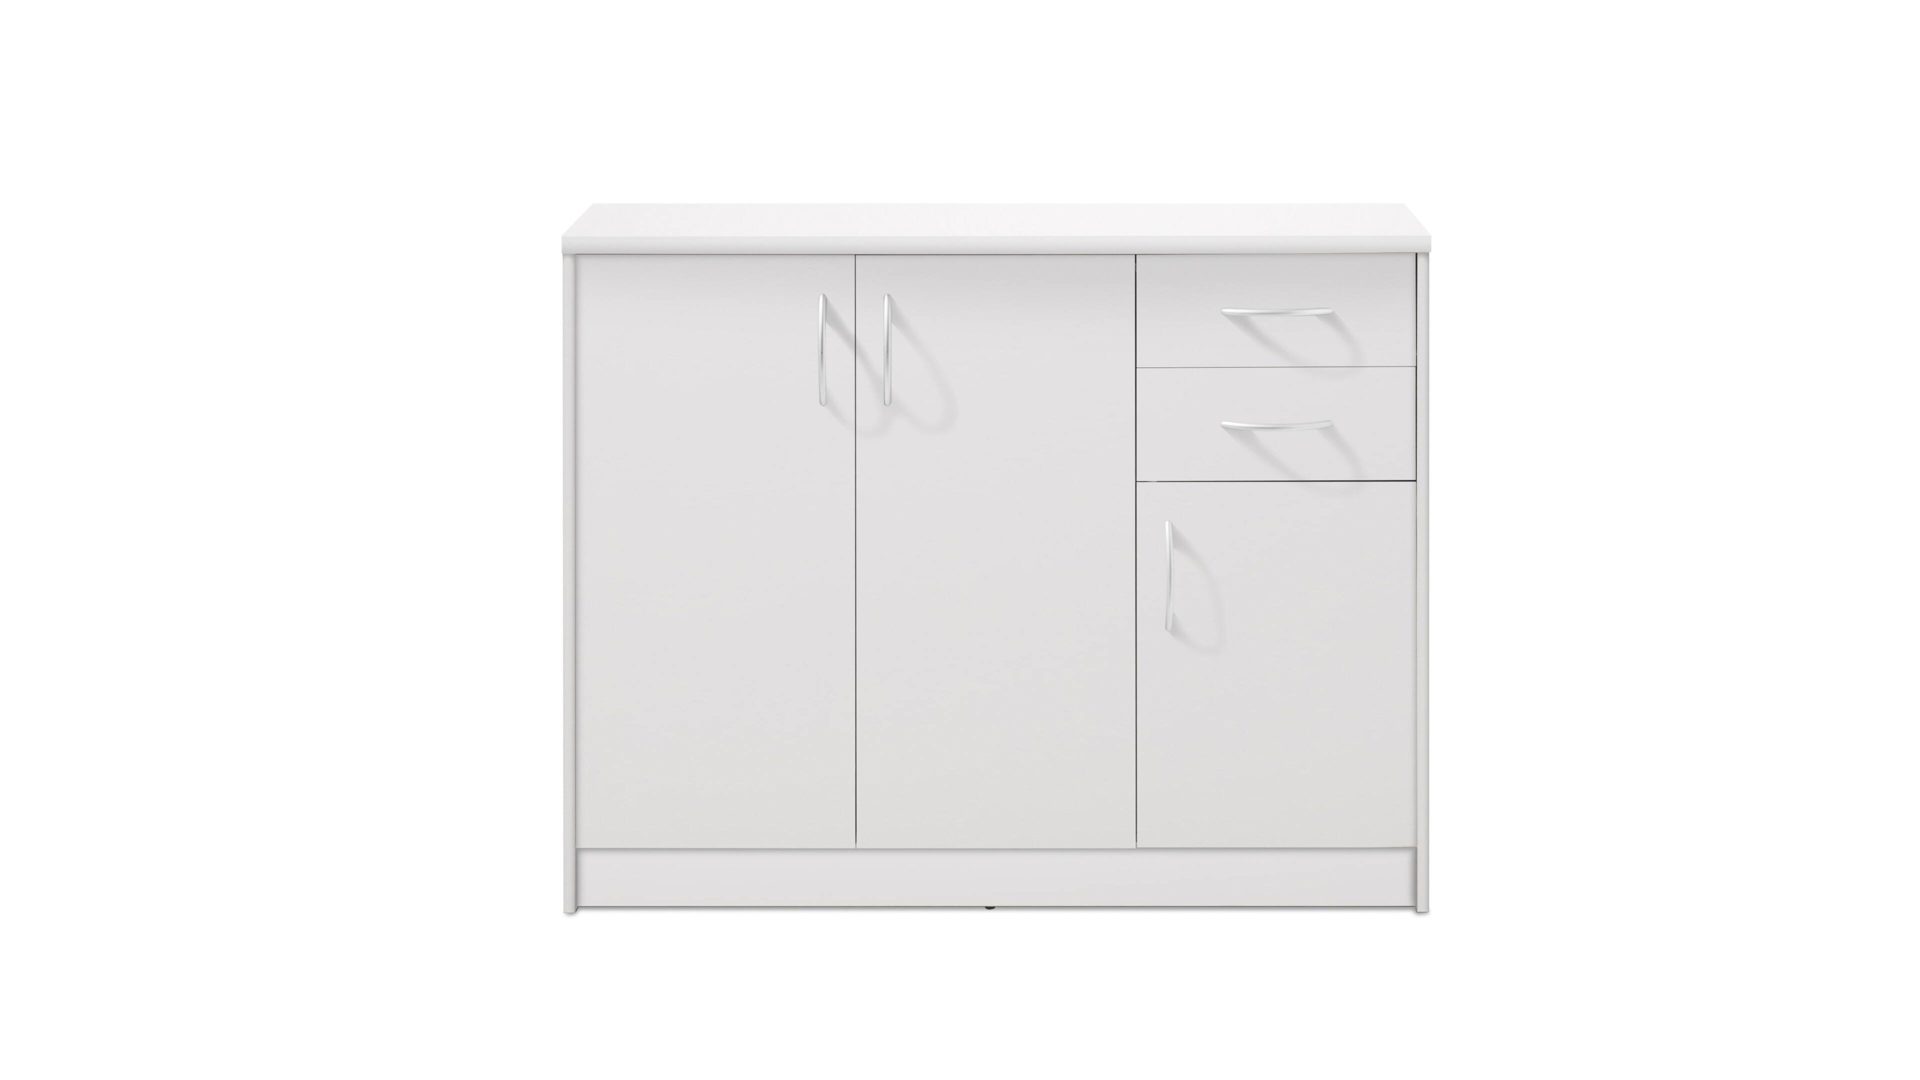 Kombikommode Bega consult aus Holz in Weiß Kombikommode als Wohnzimmermöbel weiße Kunststoffoberflächen – drei Türen, zwei Schubladen